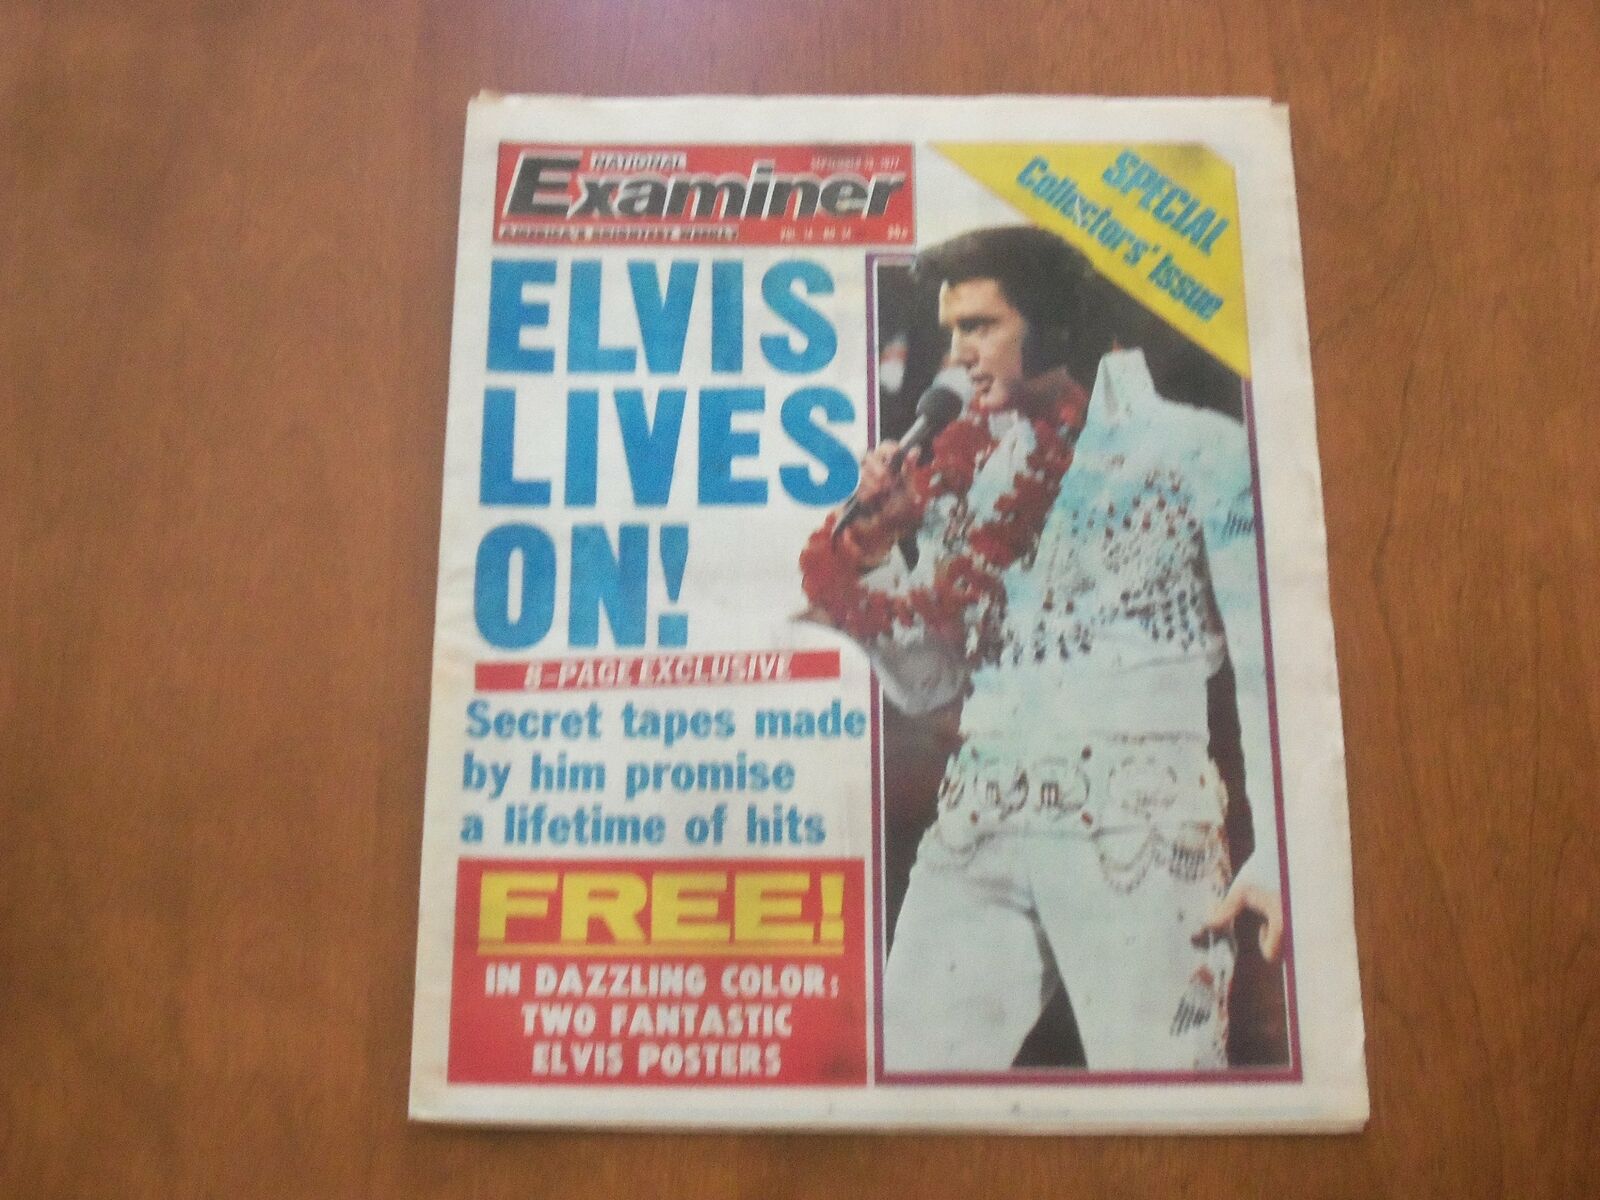 1977 SEPTEMBER 13 NATIONAL EXAMINER NEWSPAPER - ELVIS PRESLEY LIVES ON- NP 4711